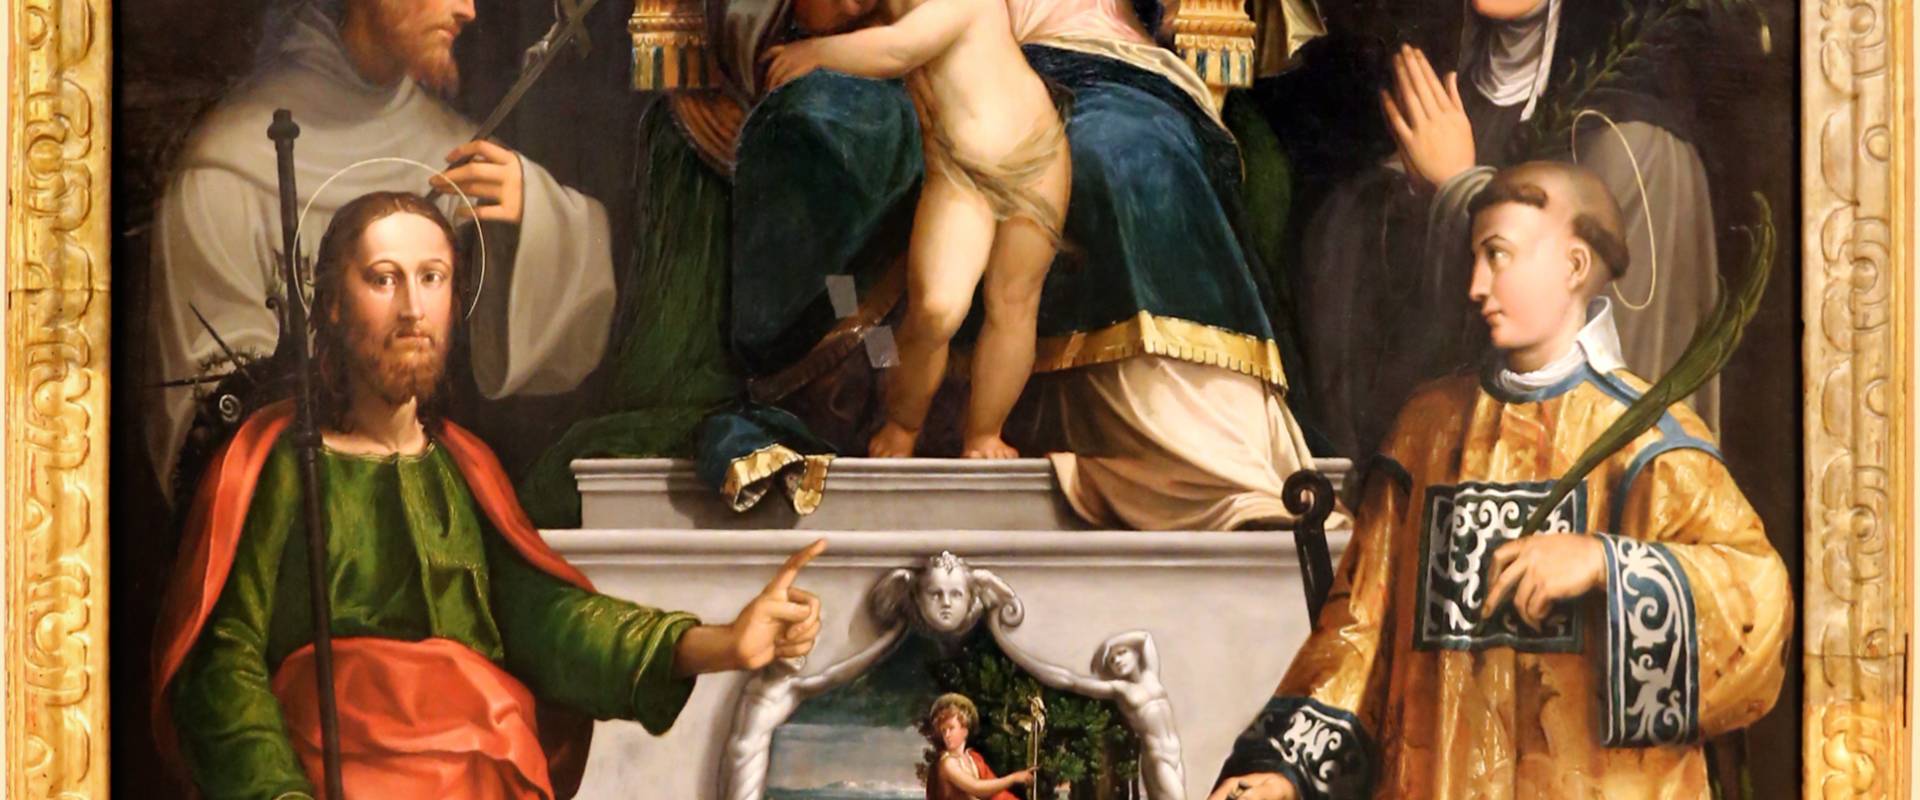 Niccolò dell'abate, madonna in trono col bambino e i ss. francesco, chiara, jacopo e lorenzo, 1540-41 ca. 01 foto di Sailko